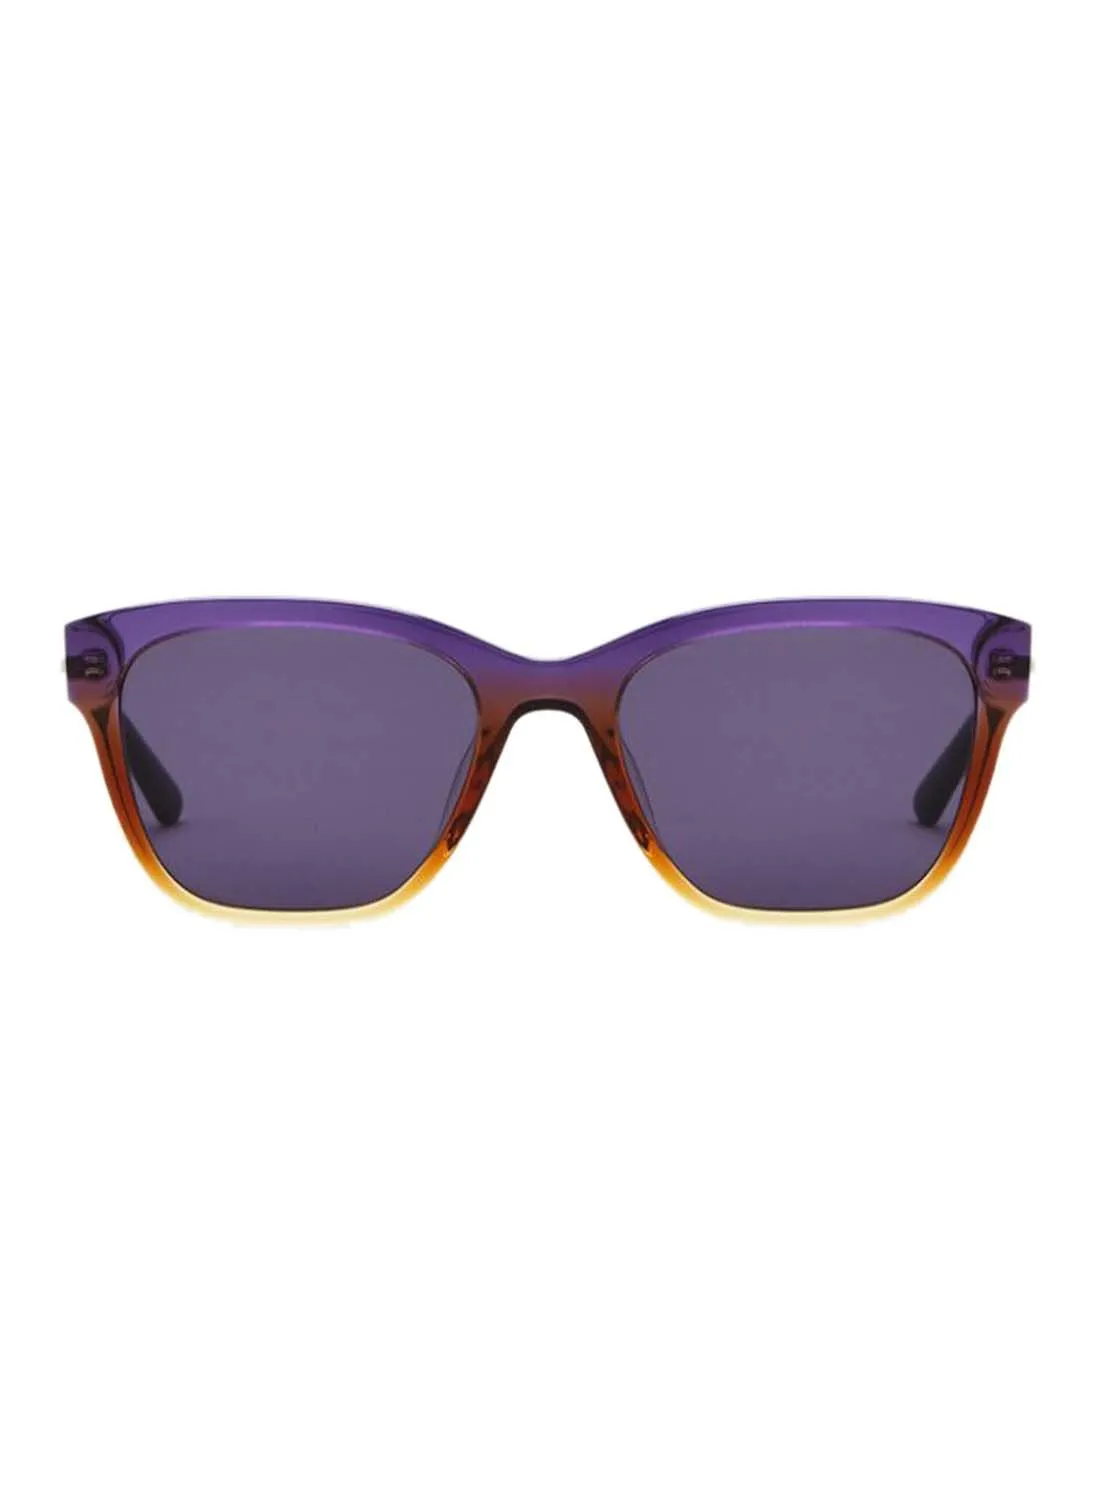 CALVIN KLEIN Women's Full Rimmed Square Frame Sunglasses - Lens Size: 55 mm